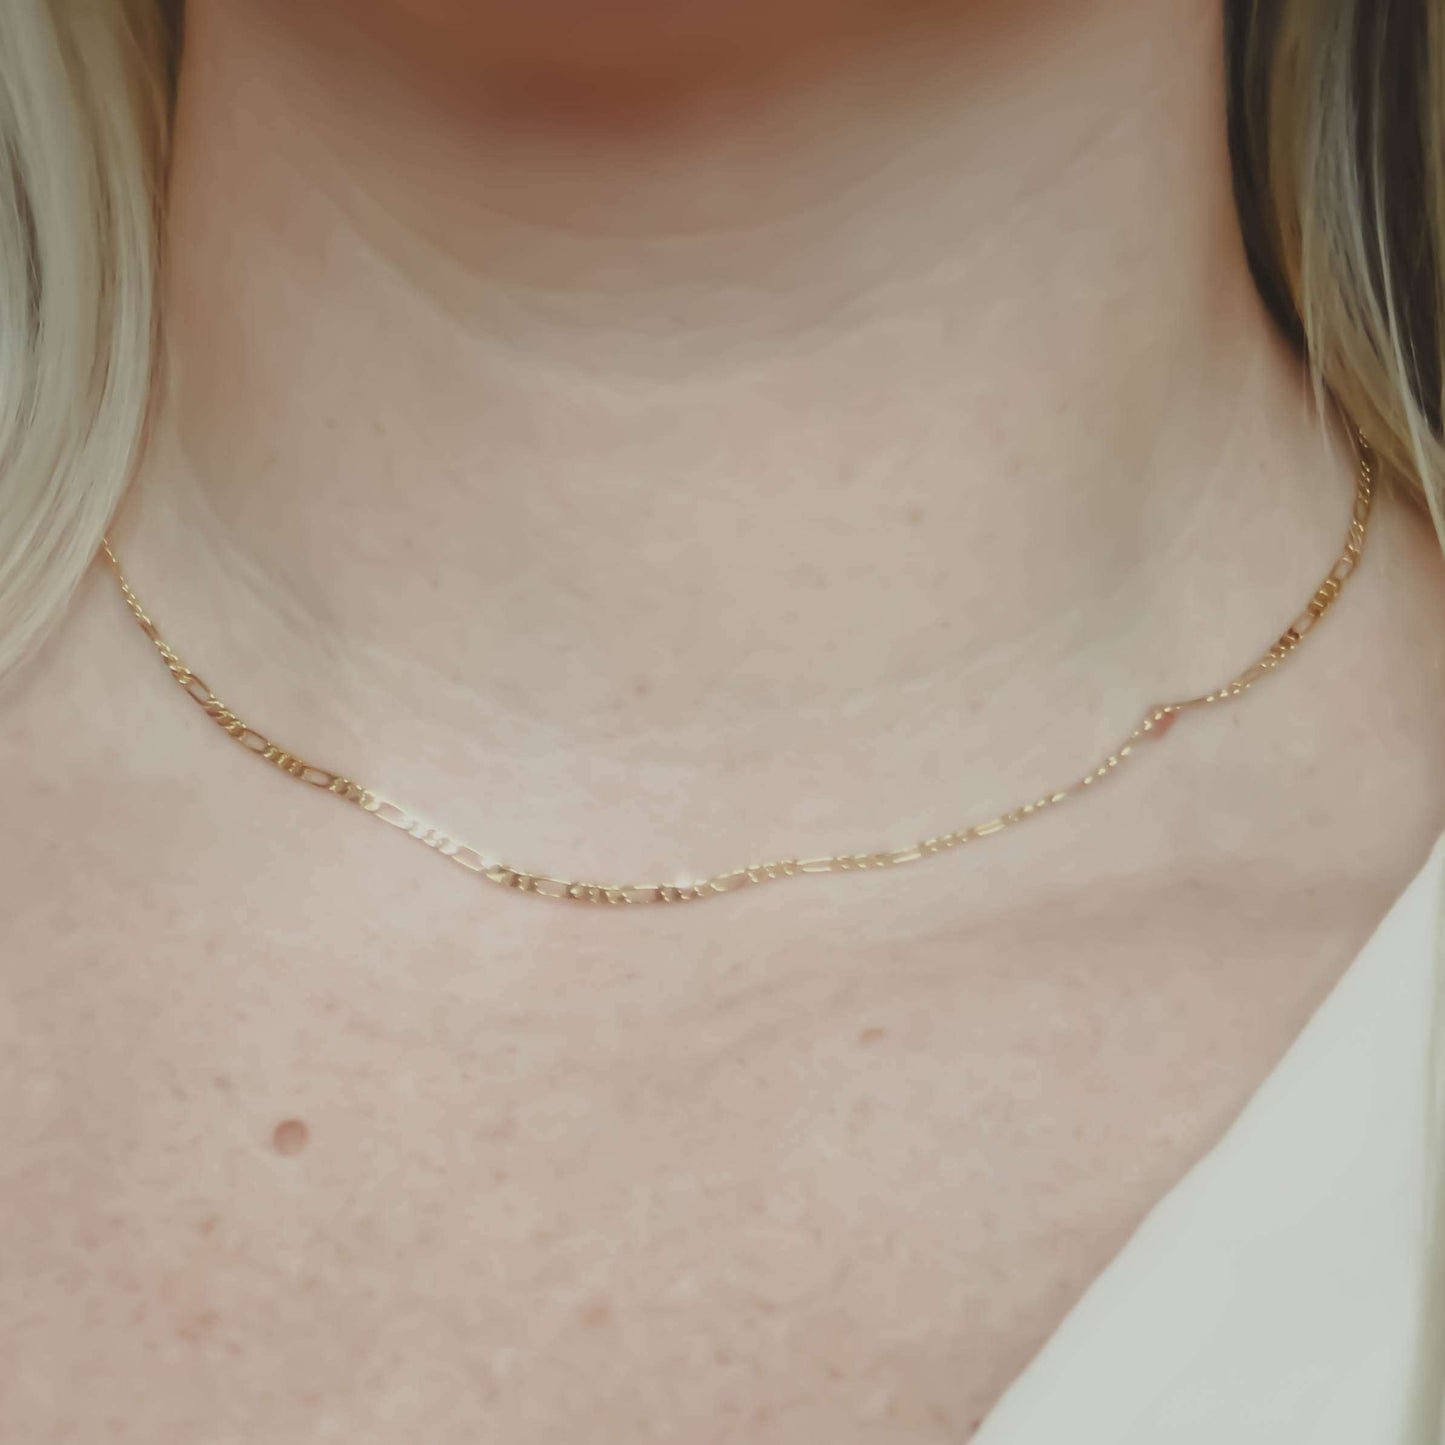 Jonesy Wood:Necklace:Phoebe Necklace